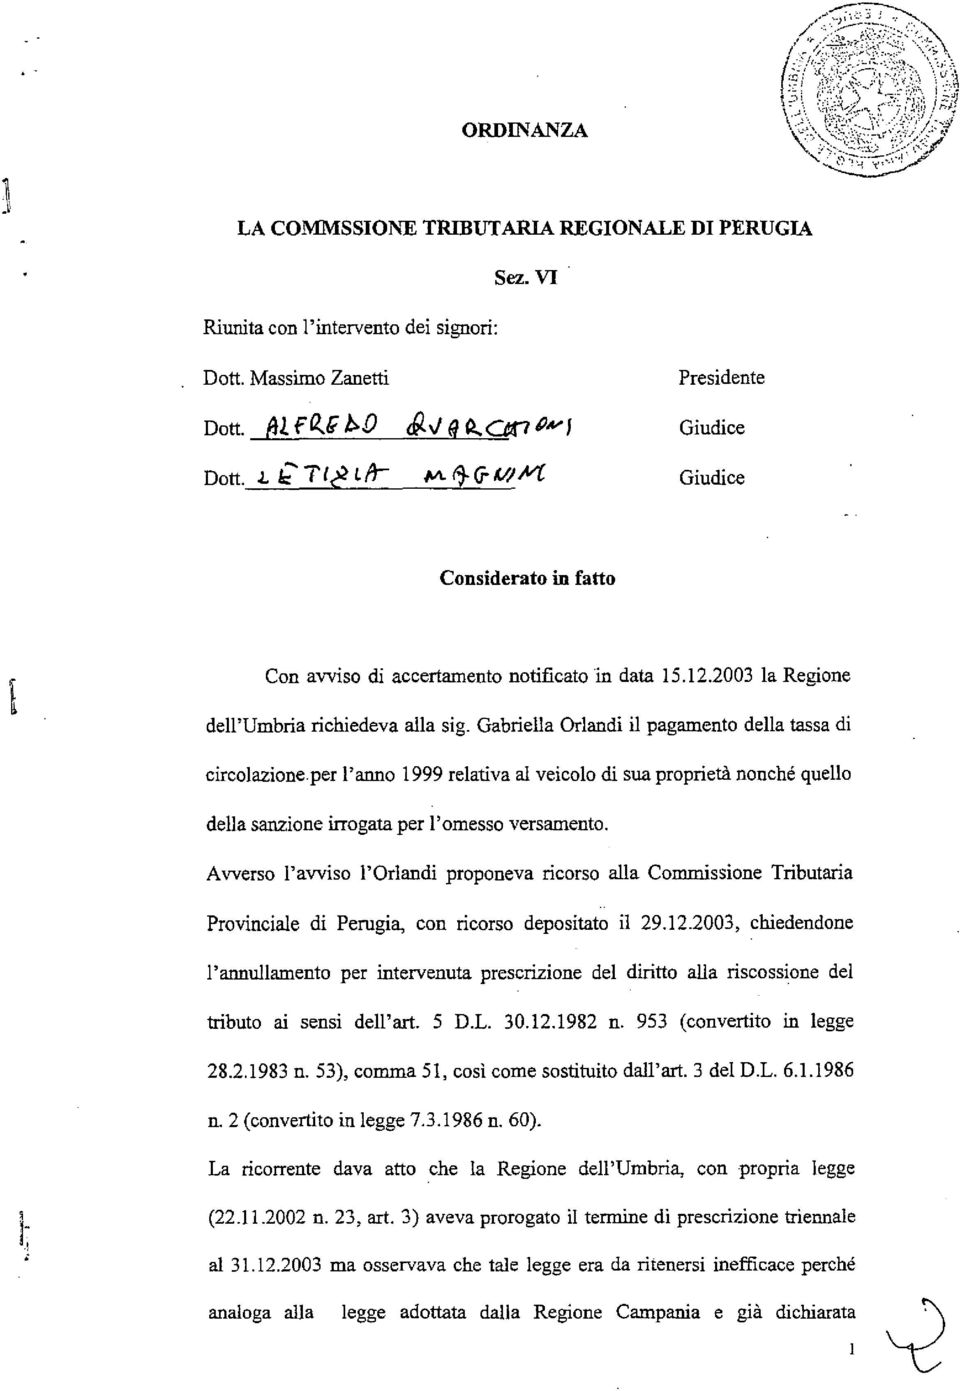 Gabriella Orlandi il pagamento della tassa di circolazione.per l'anno 1999 relativa al veicolo di sua proprietà nonché quello della sanzione irrogata per l'omesso versamento.